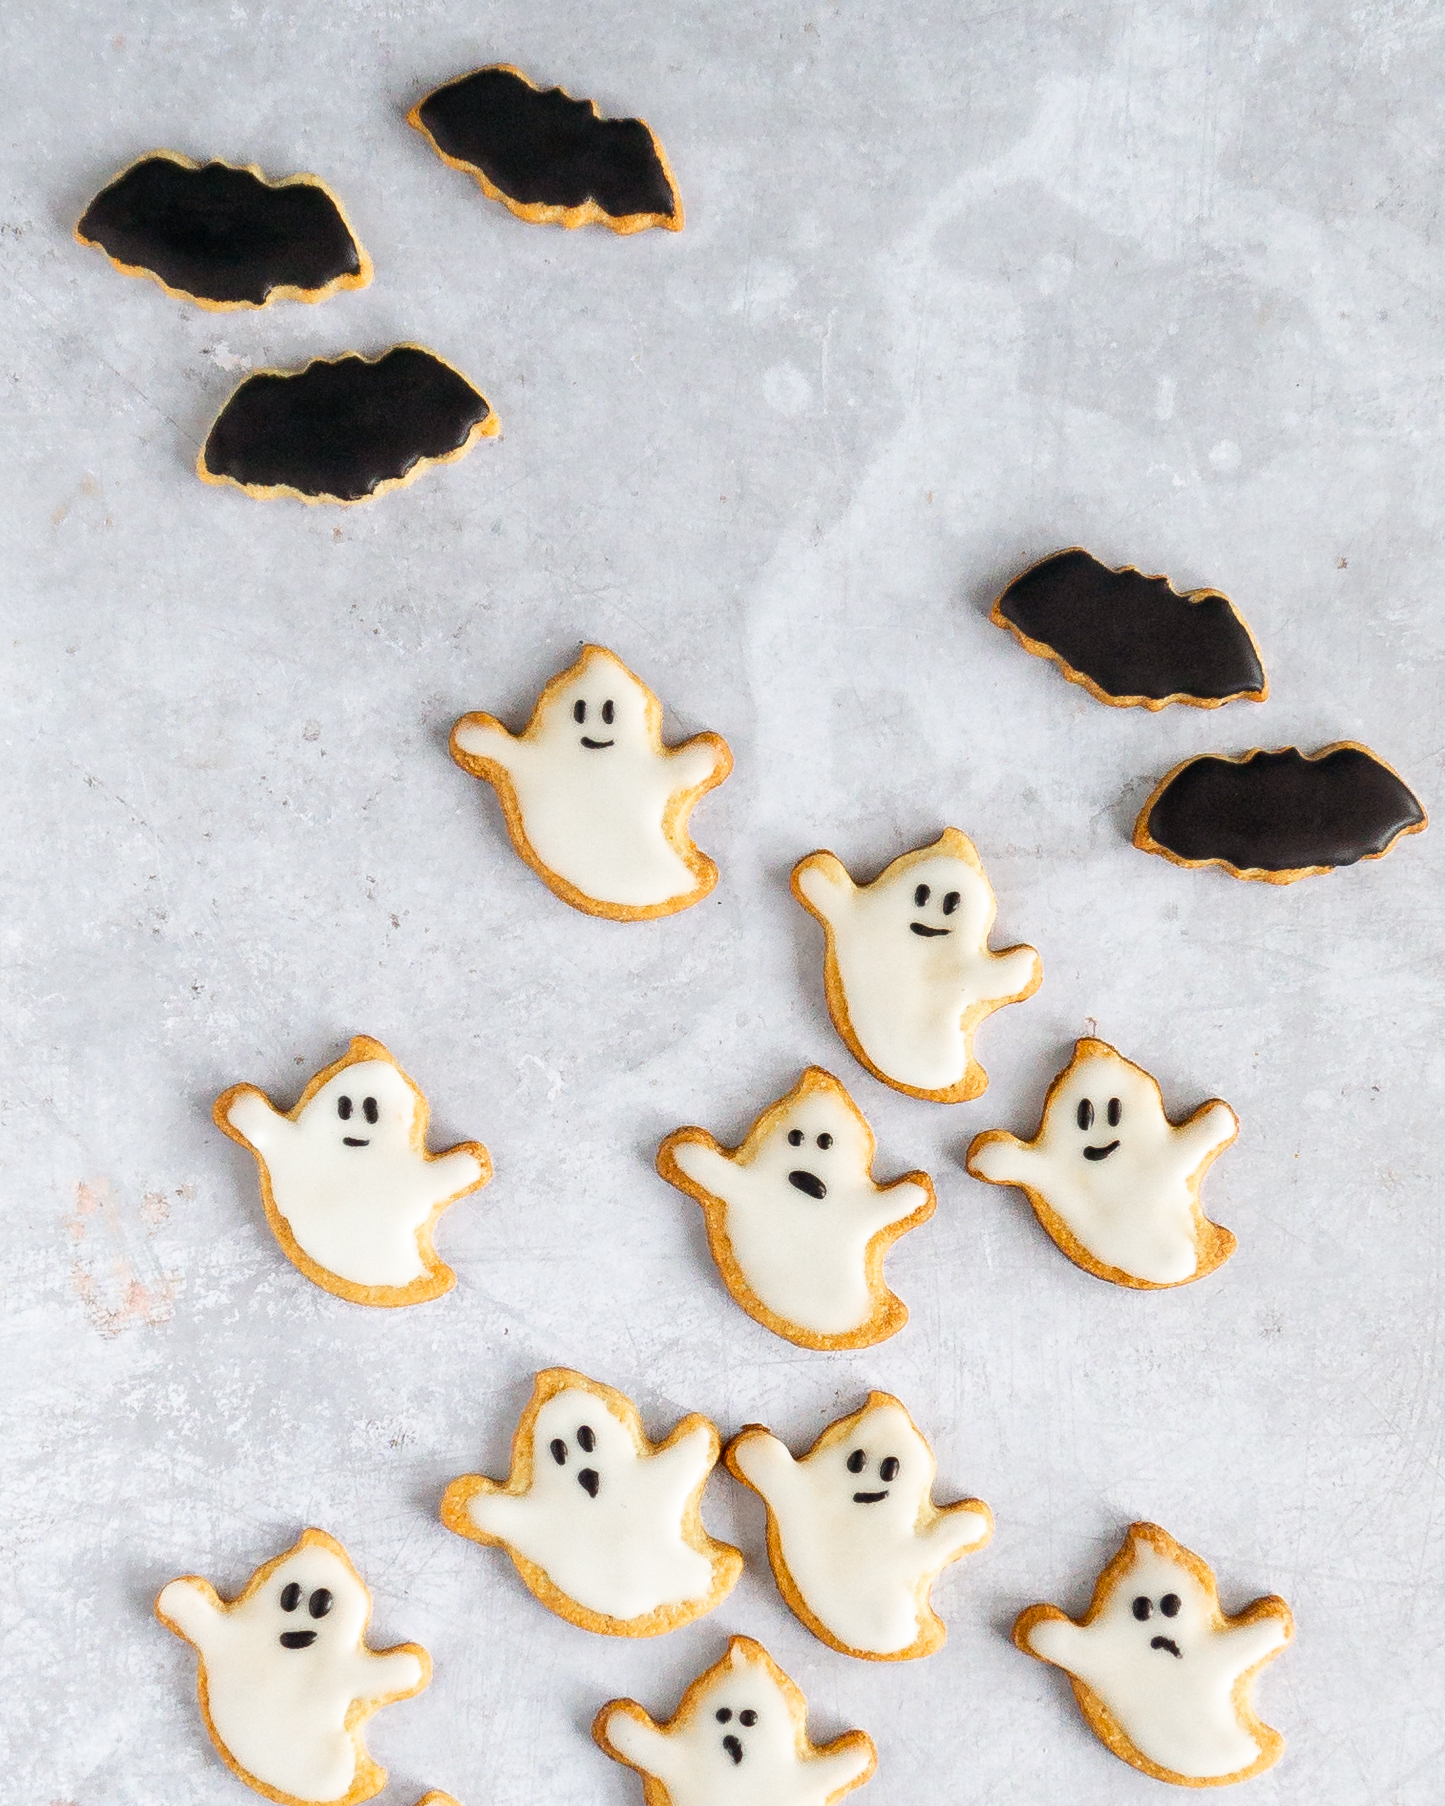 Schaurig schöne Halloween Kekse